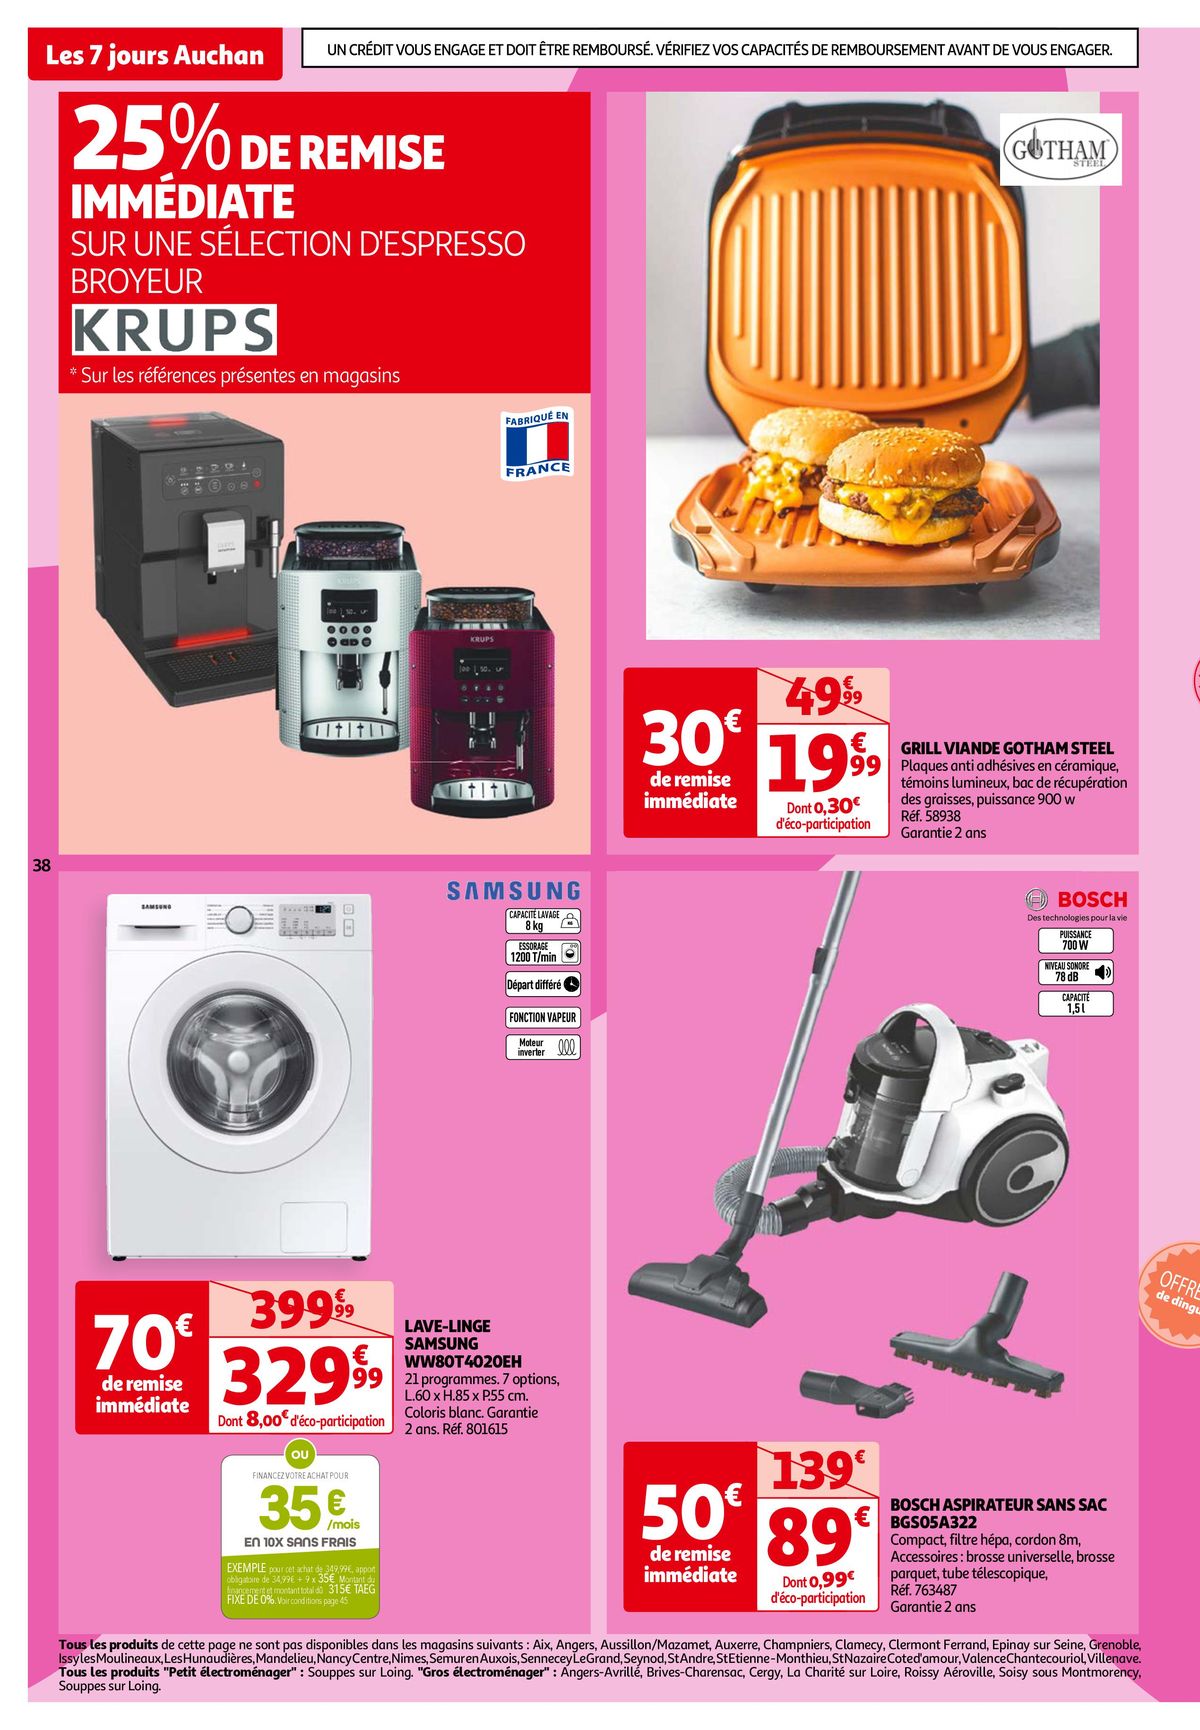 Catalogue Les 7 jours Auchan, c'est maintenant !, page 00038